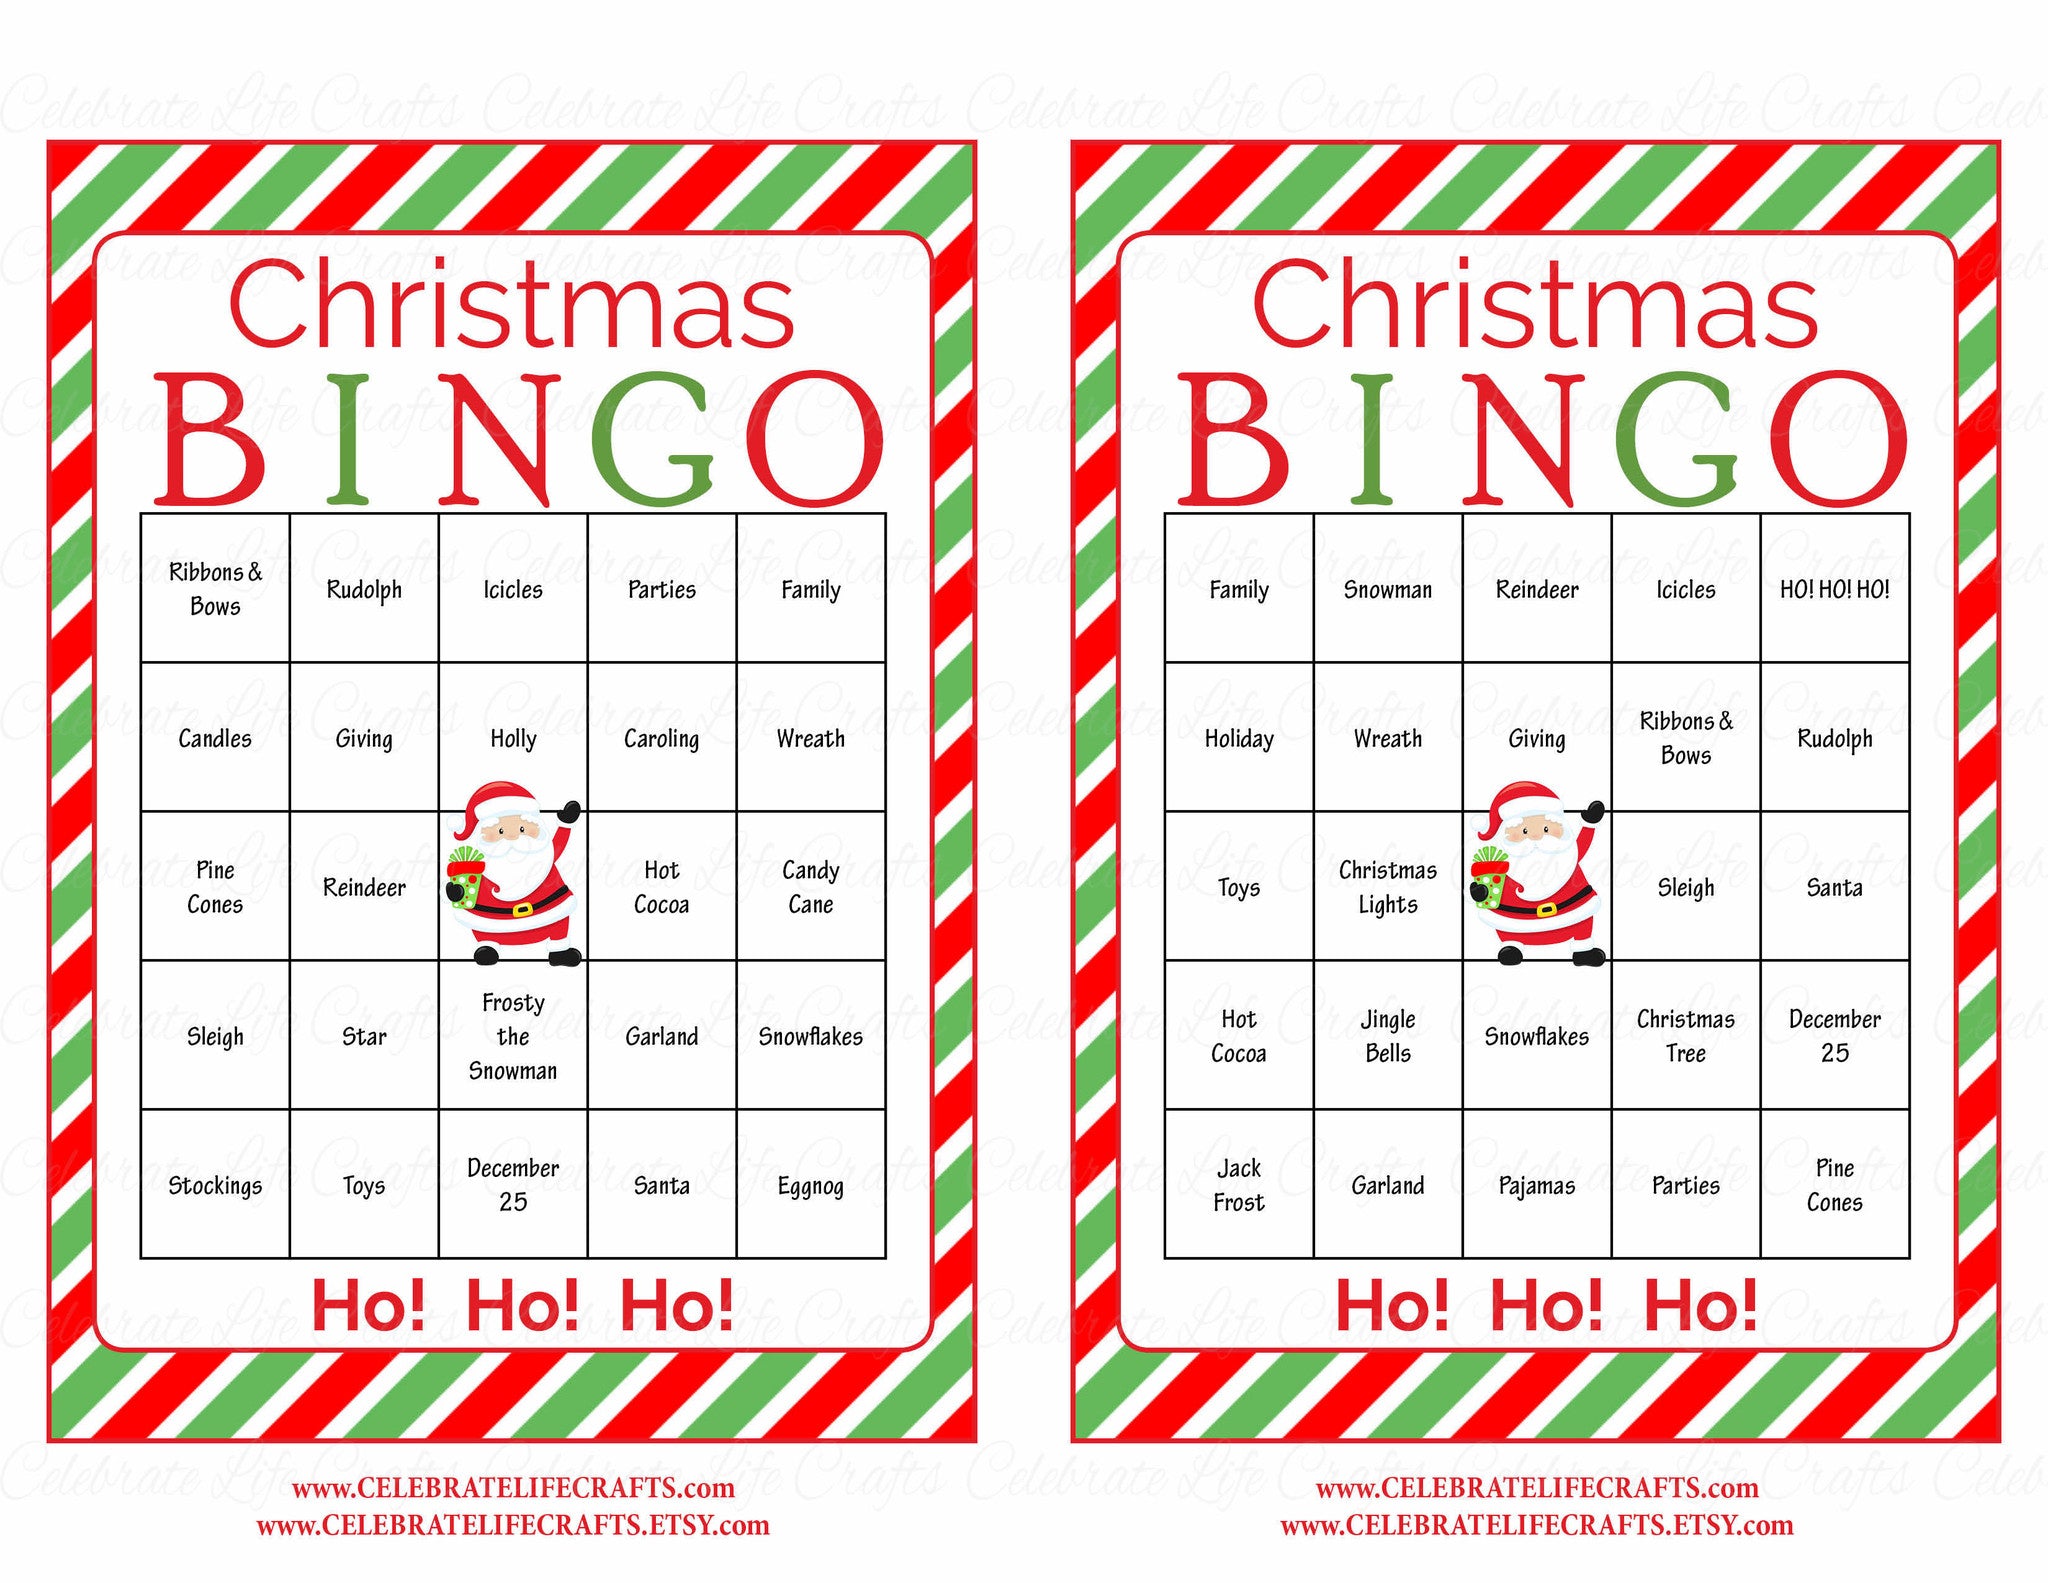 free-download-printable-christmas-games-printable-templates